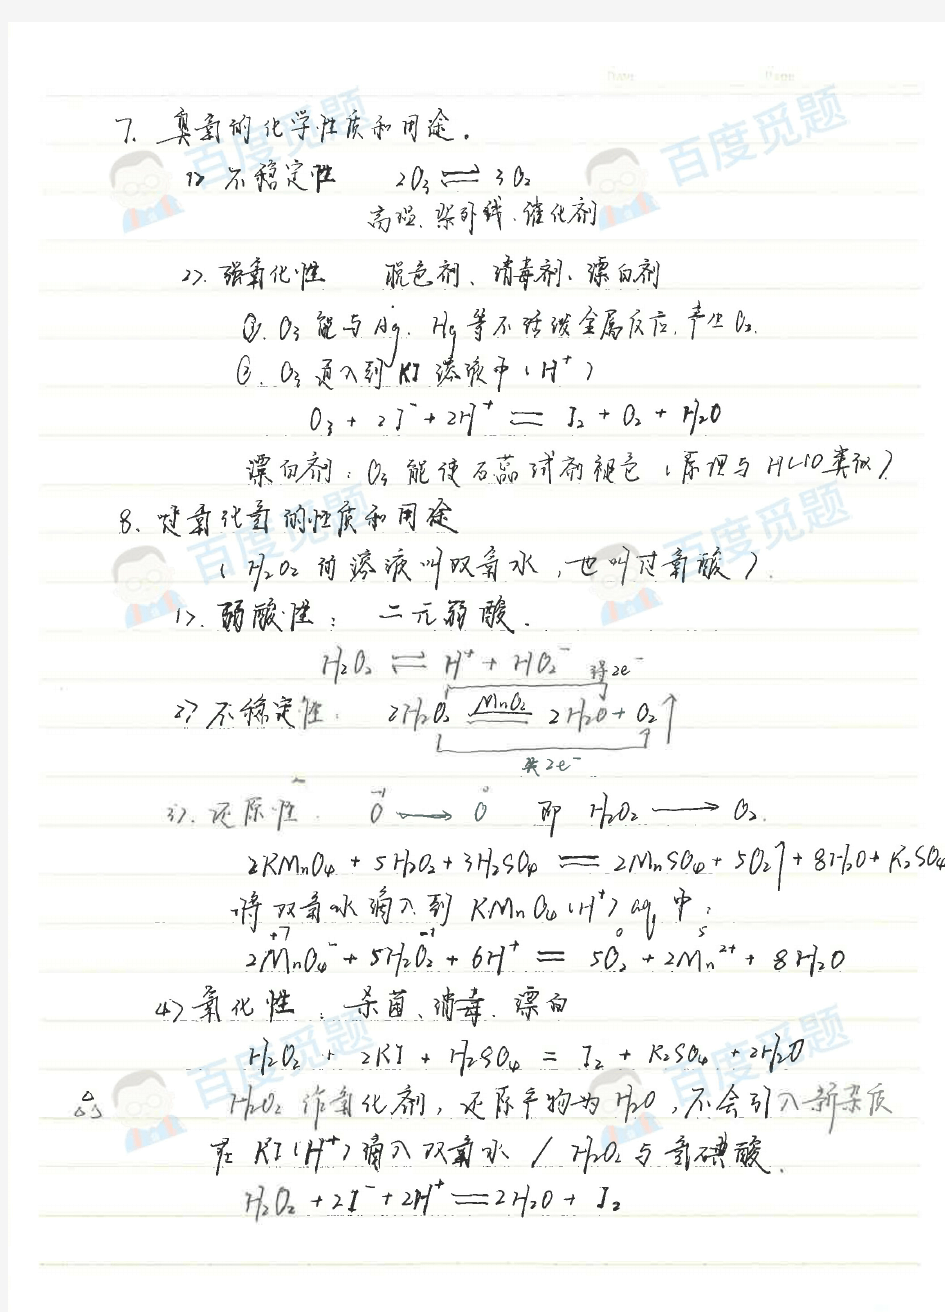 银川一中理科学霸高中化学笔记_硫及其主要化合物_2015高考状元笔记